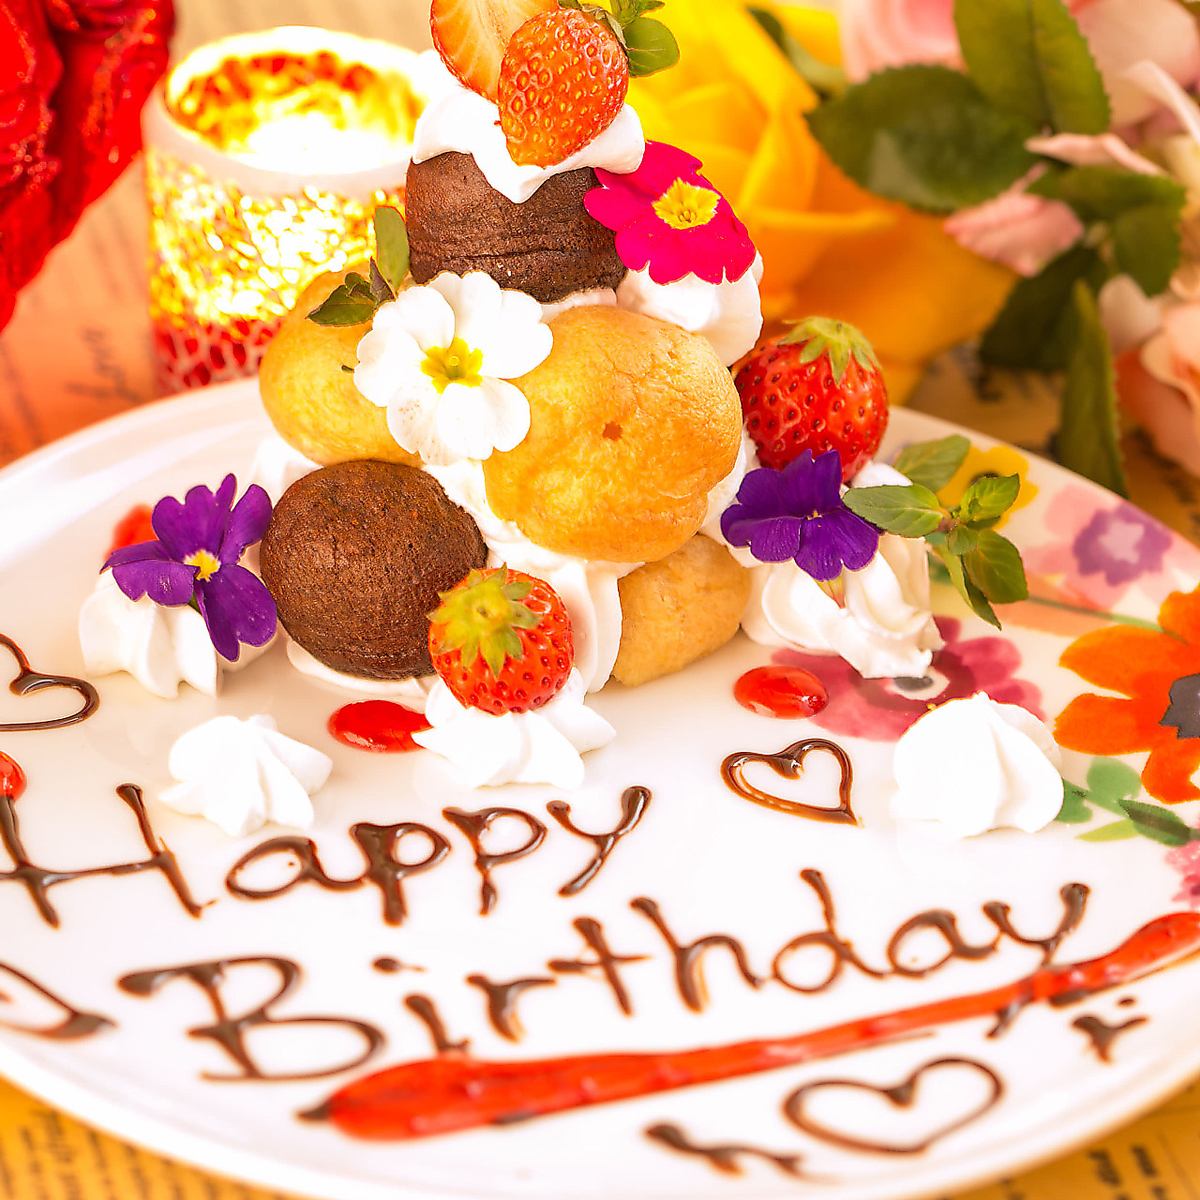 在生日和紀念日♪我們會給你我們特別的甜點盤☆